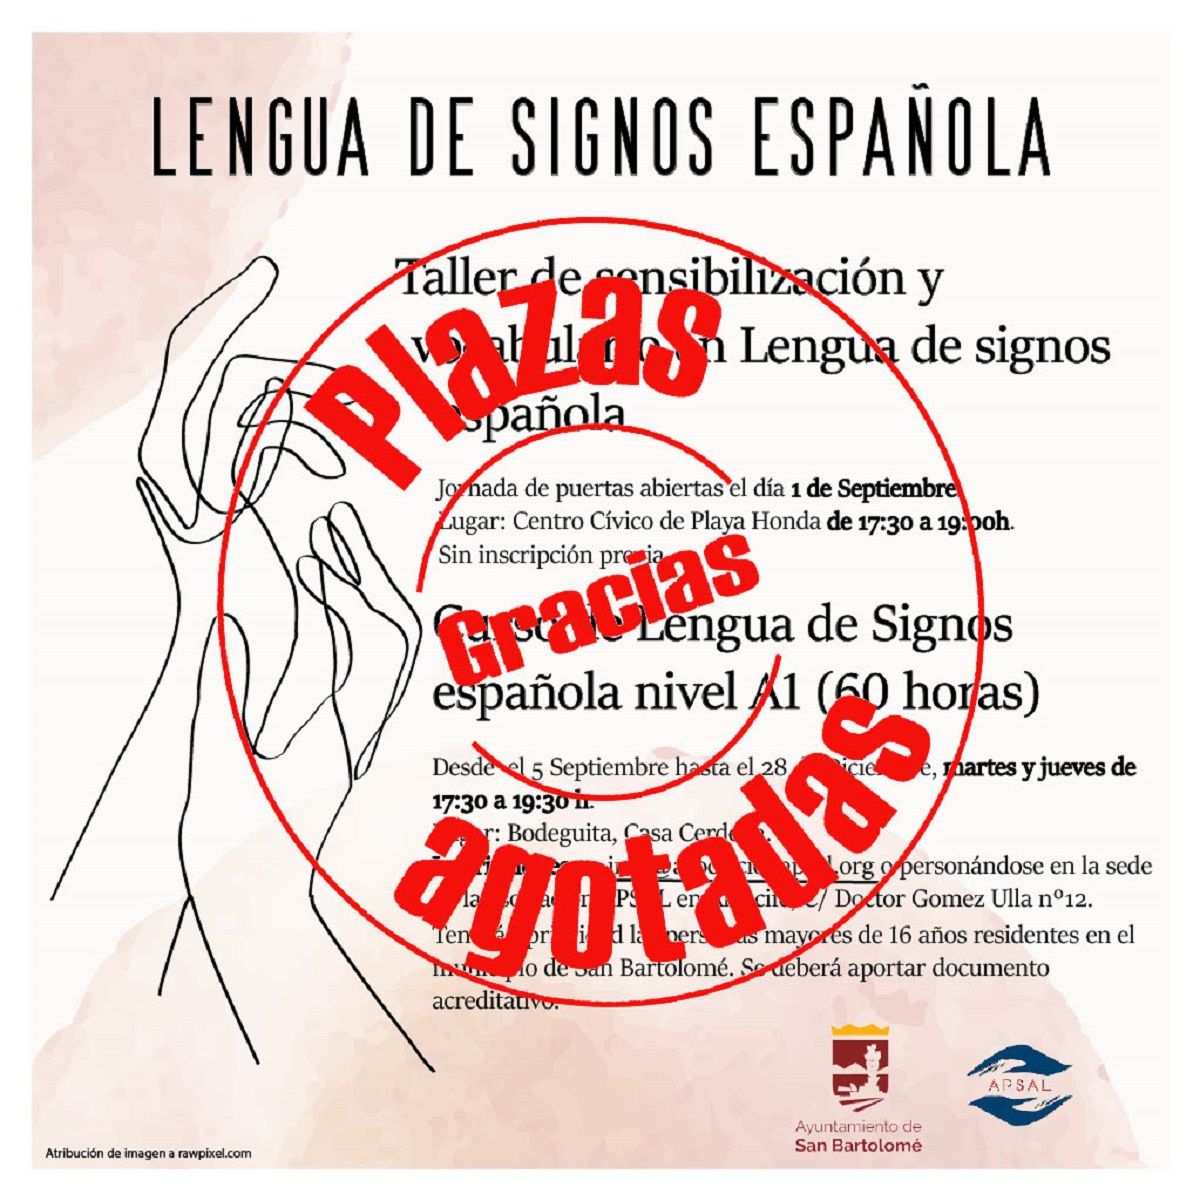 Plazas agotadas para el curso de lengua de signos en San Bartolomé